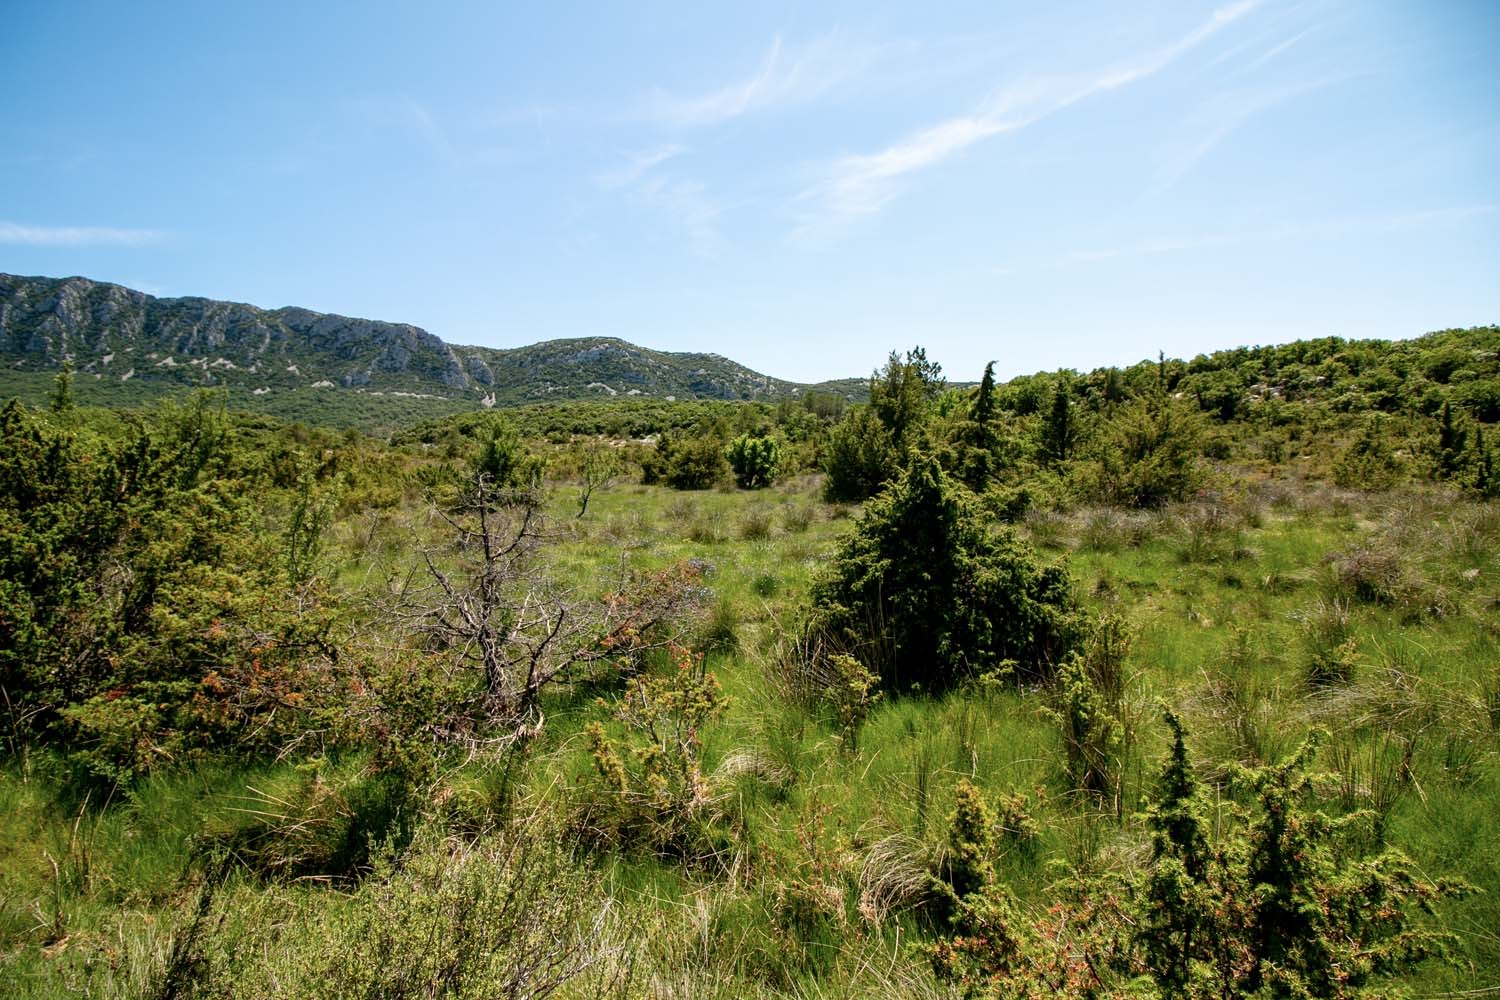 Sarriette du Languedoc - bio et sauvage